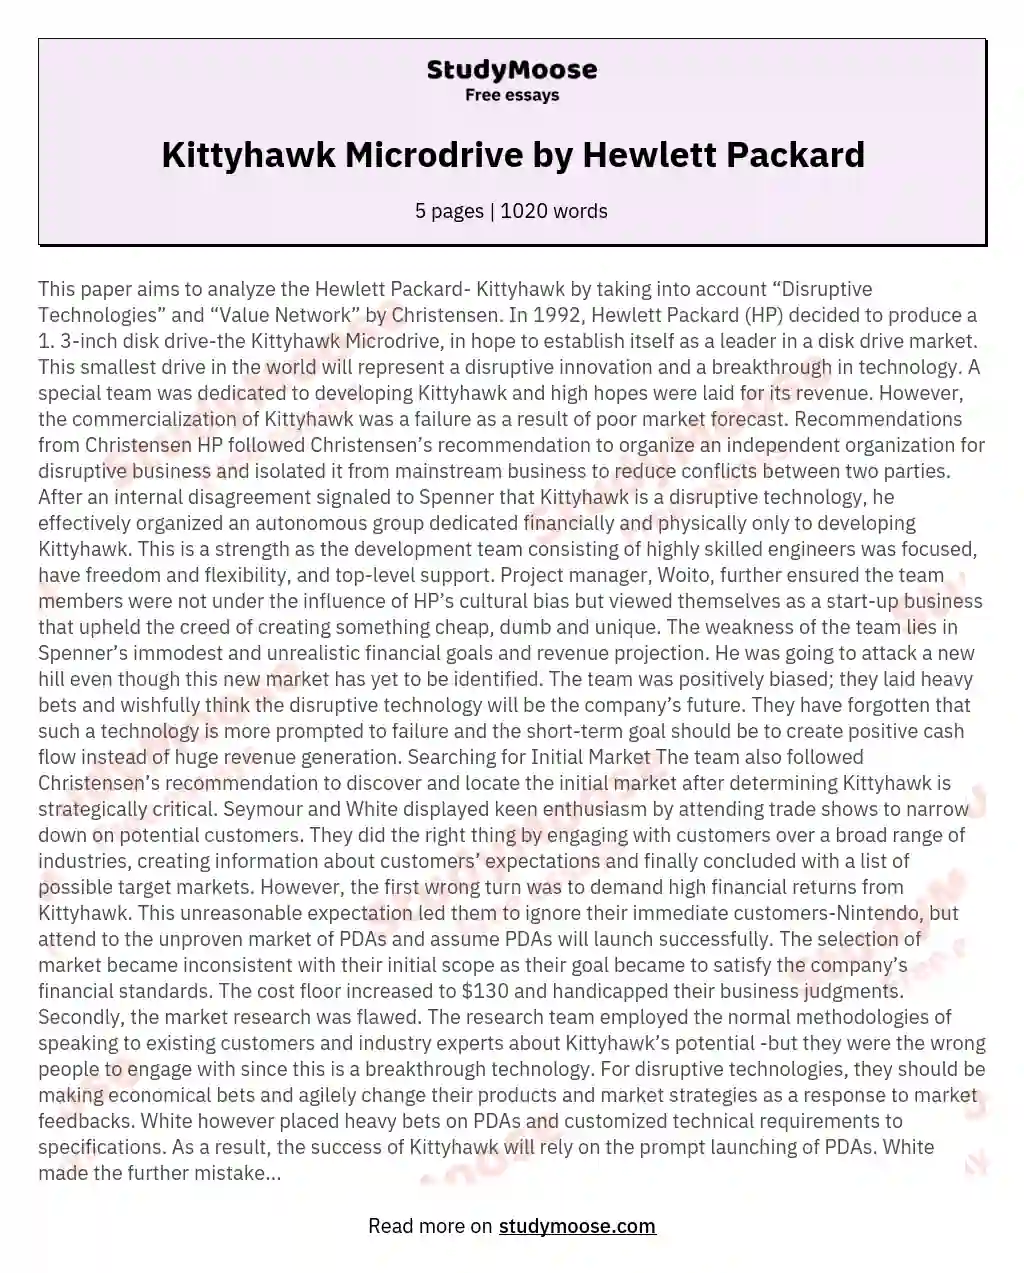 Kittyhawk Microdrive by Hewlett Packard essay